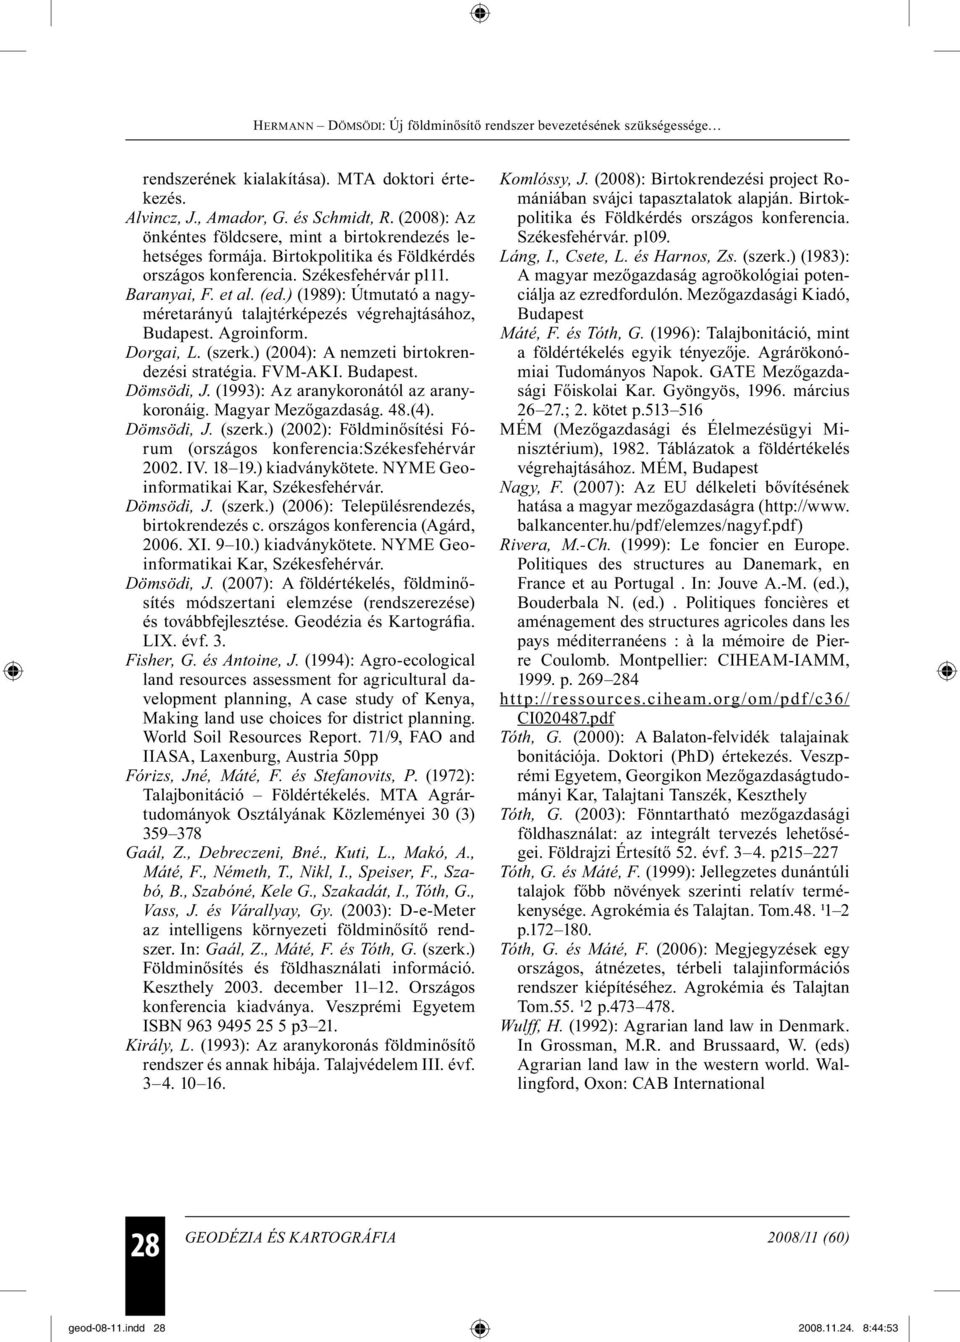 (szerk.) (2004): A nemzeti birtokrendezési stratégia. FVM-AKI. Budapest. Dömsödi, J. (1993): Az aranykoronától az aranykoronáig. Magyar Mezőgazdaság. 48.(4). Dömsödi, J. (szerk.